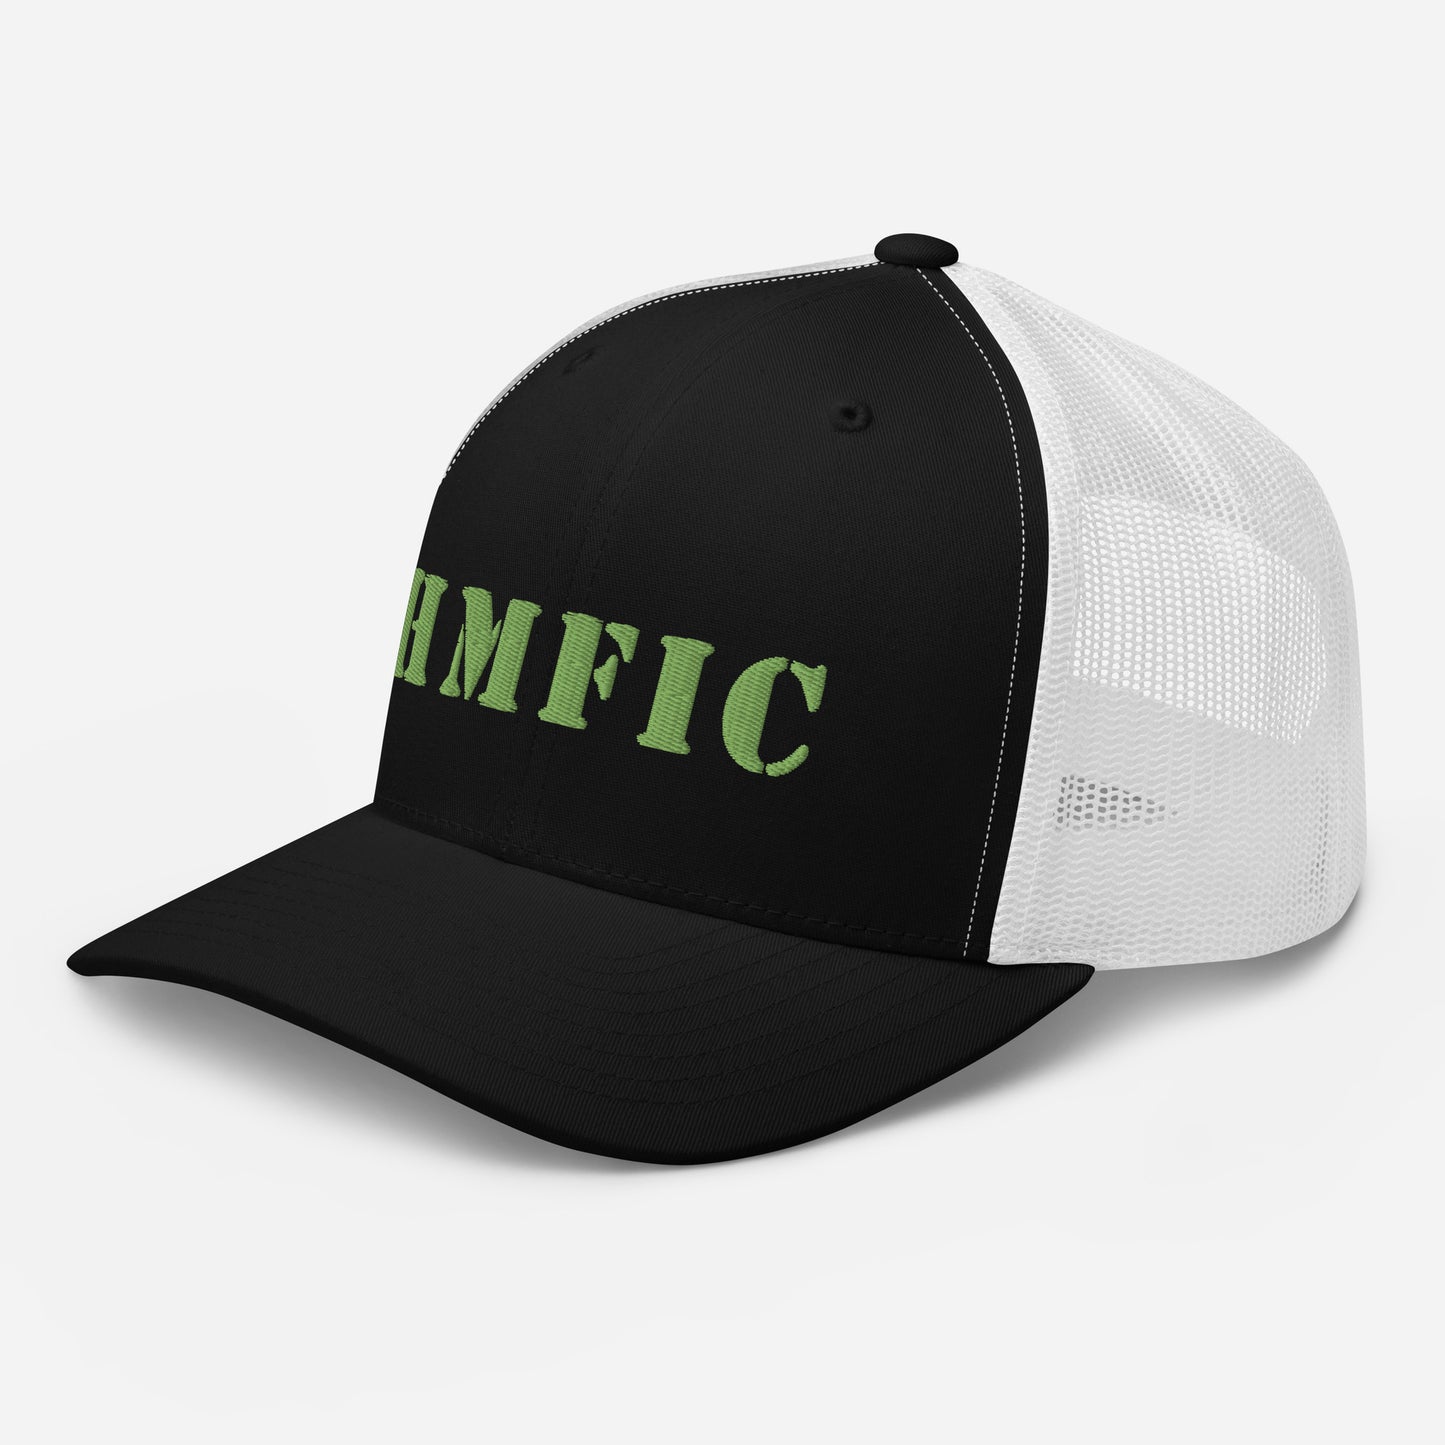 Trucker Cap - HMFIC - FAFO Sportswear